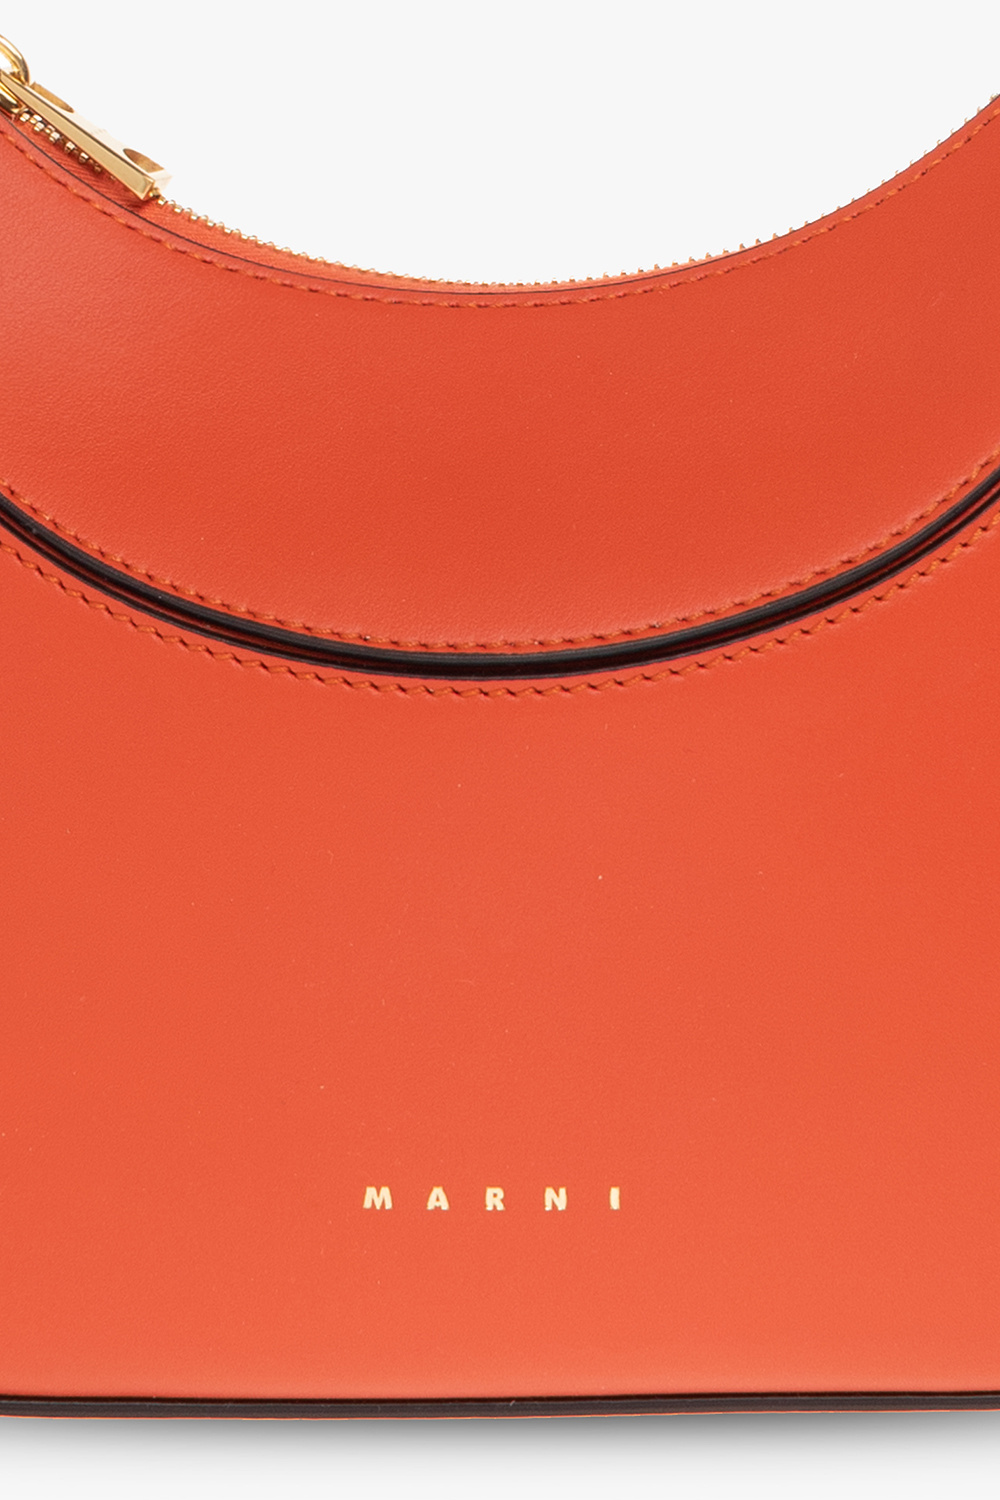 marni Z267V ‘Milano Mini’ shoulder bag